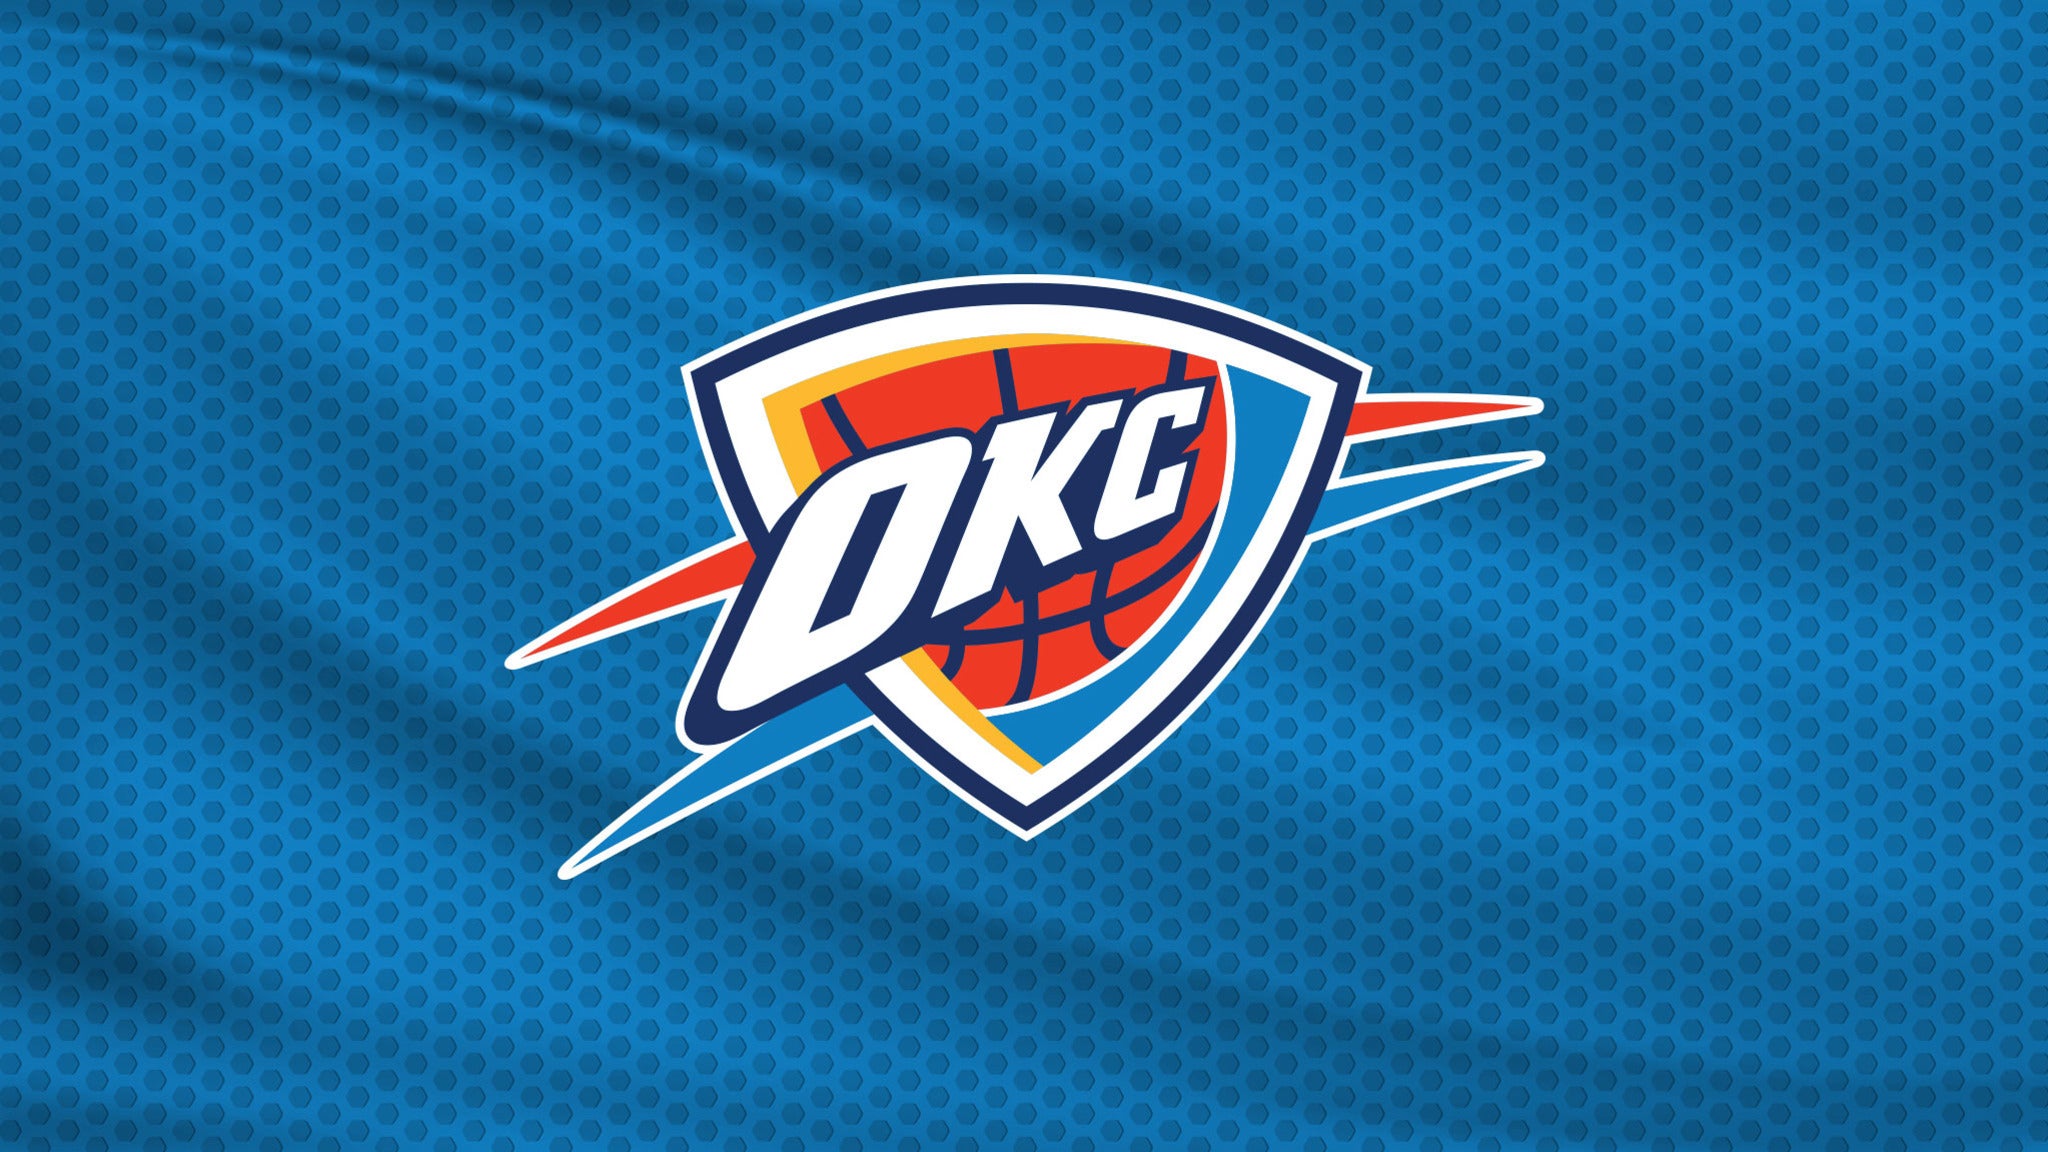 Oklahoma City Thunder vs. San Antonio Spurs at Paycom Center